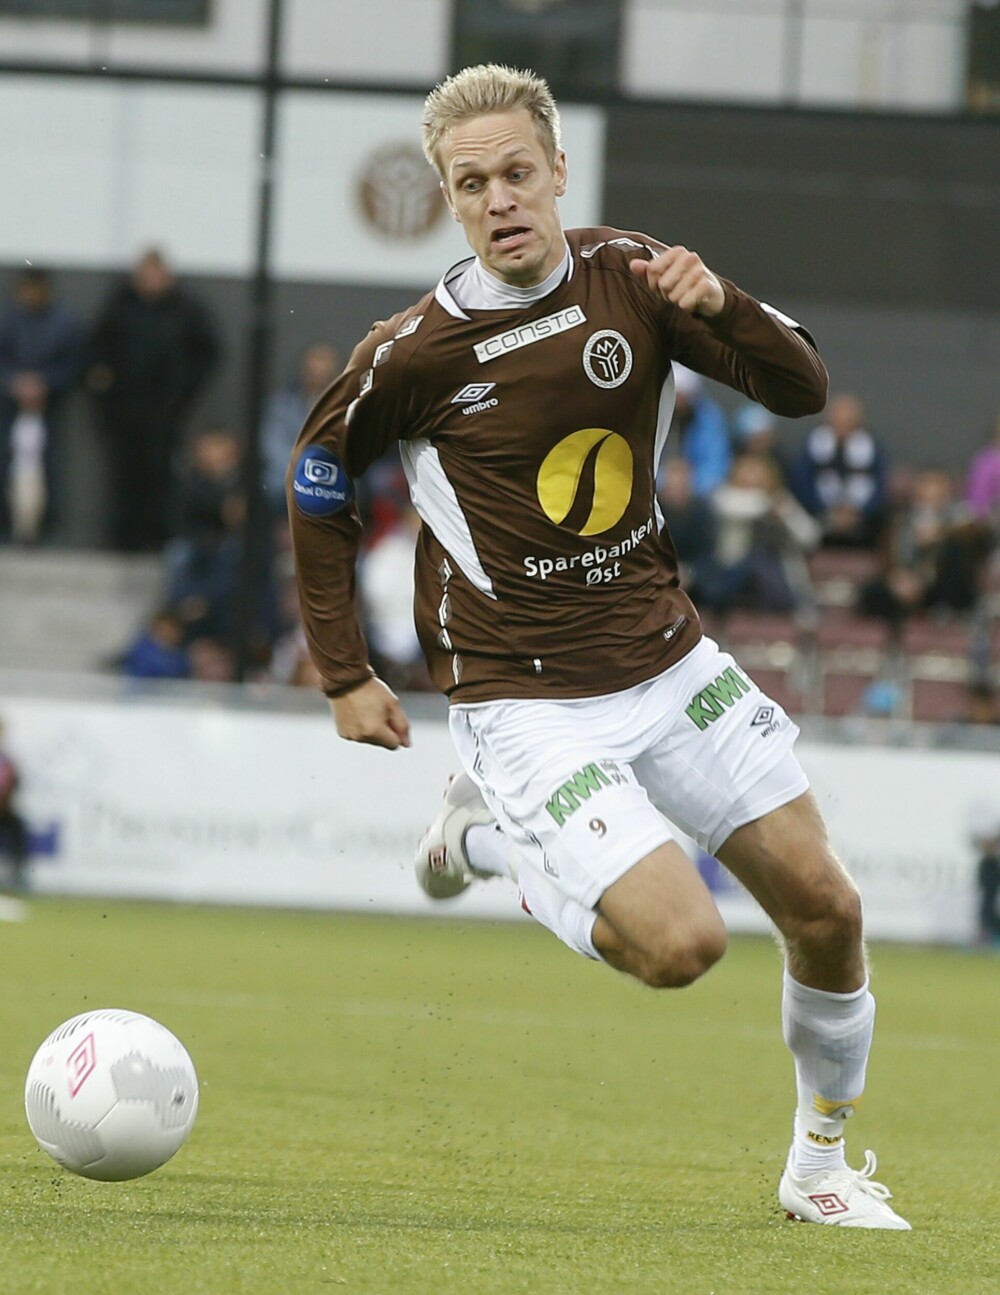 <b>FOTBALLSPILLER:</b> Mads var fotballspiller i Eliteserien for både Strømsgodset, Mjøndalen og Fredrikstad inntil han ga seg i 2018. Her i aksjon i 2015.